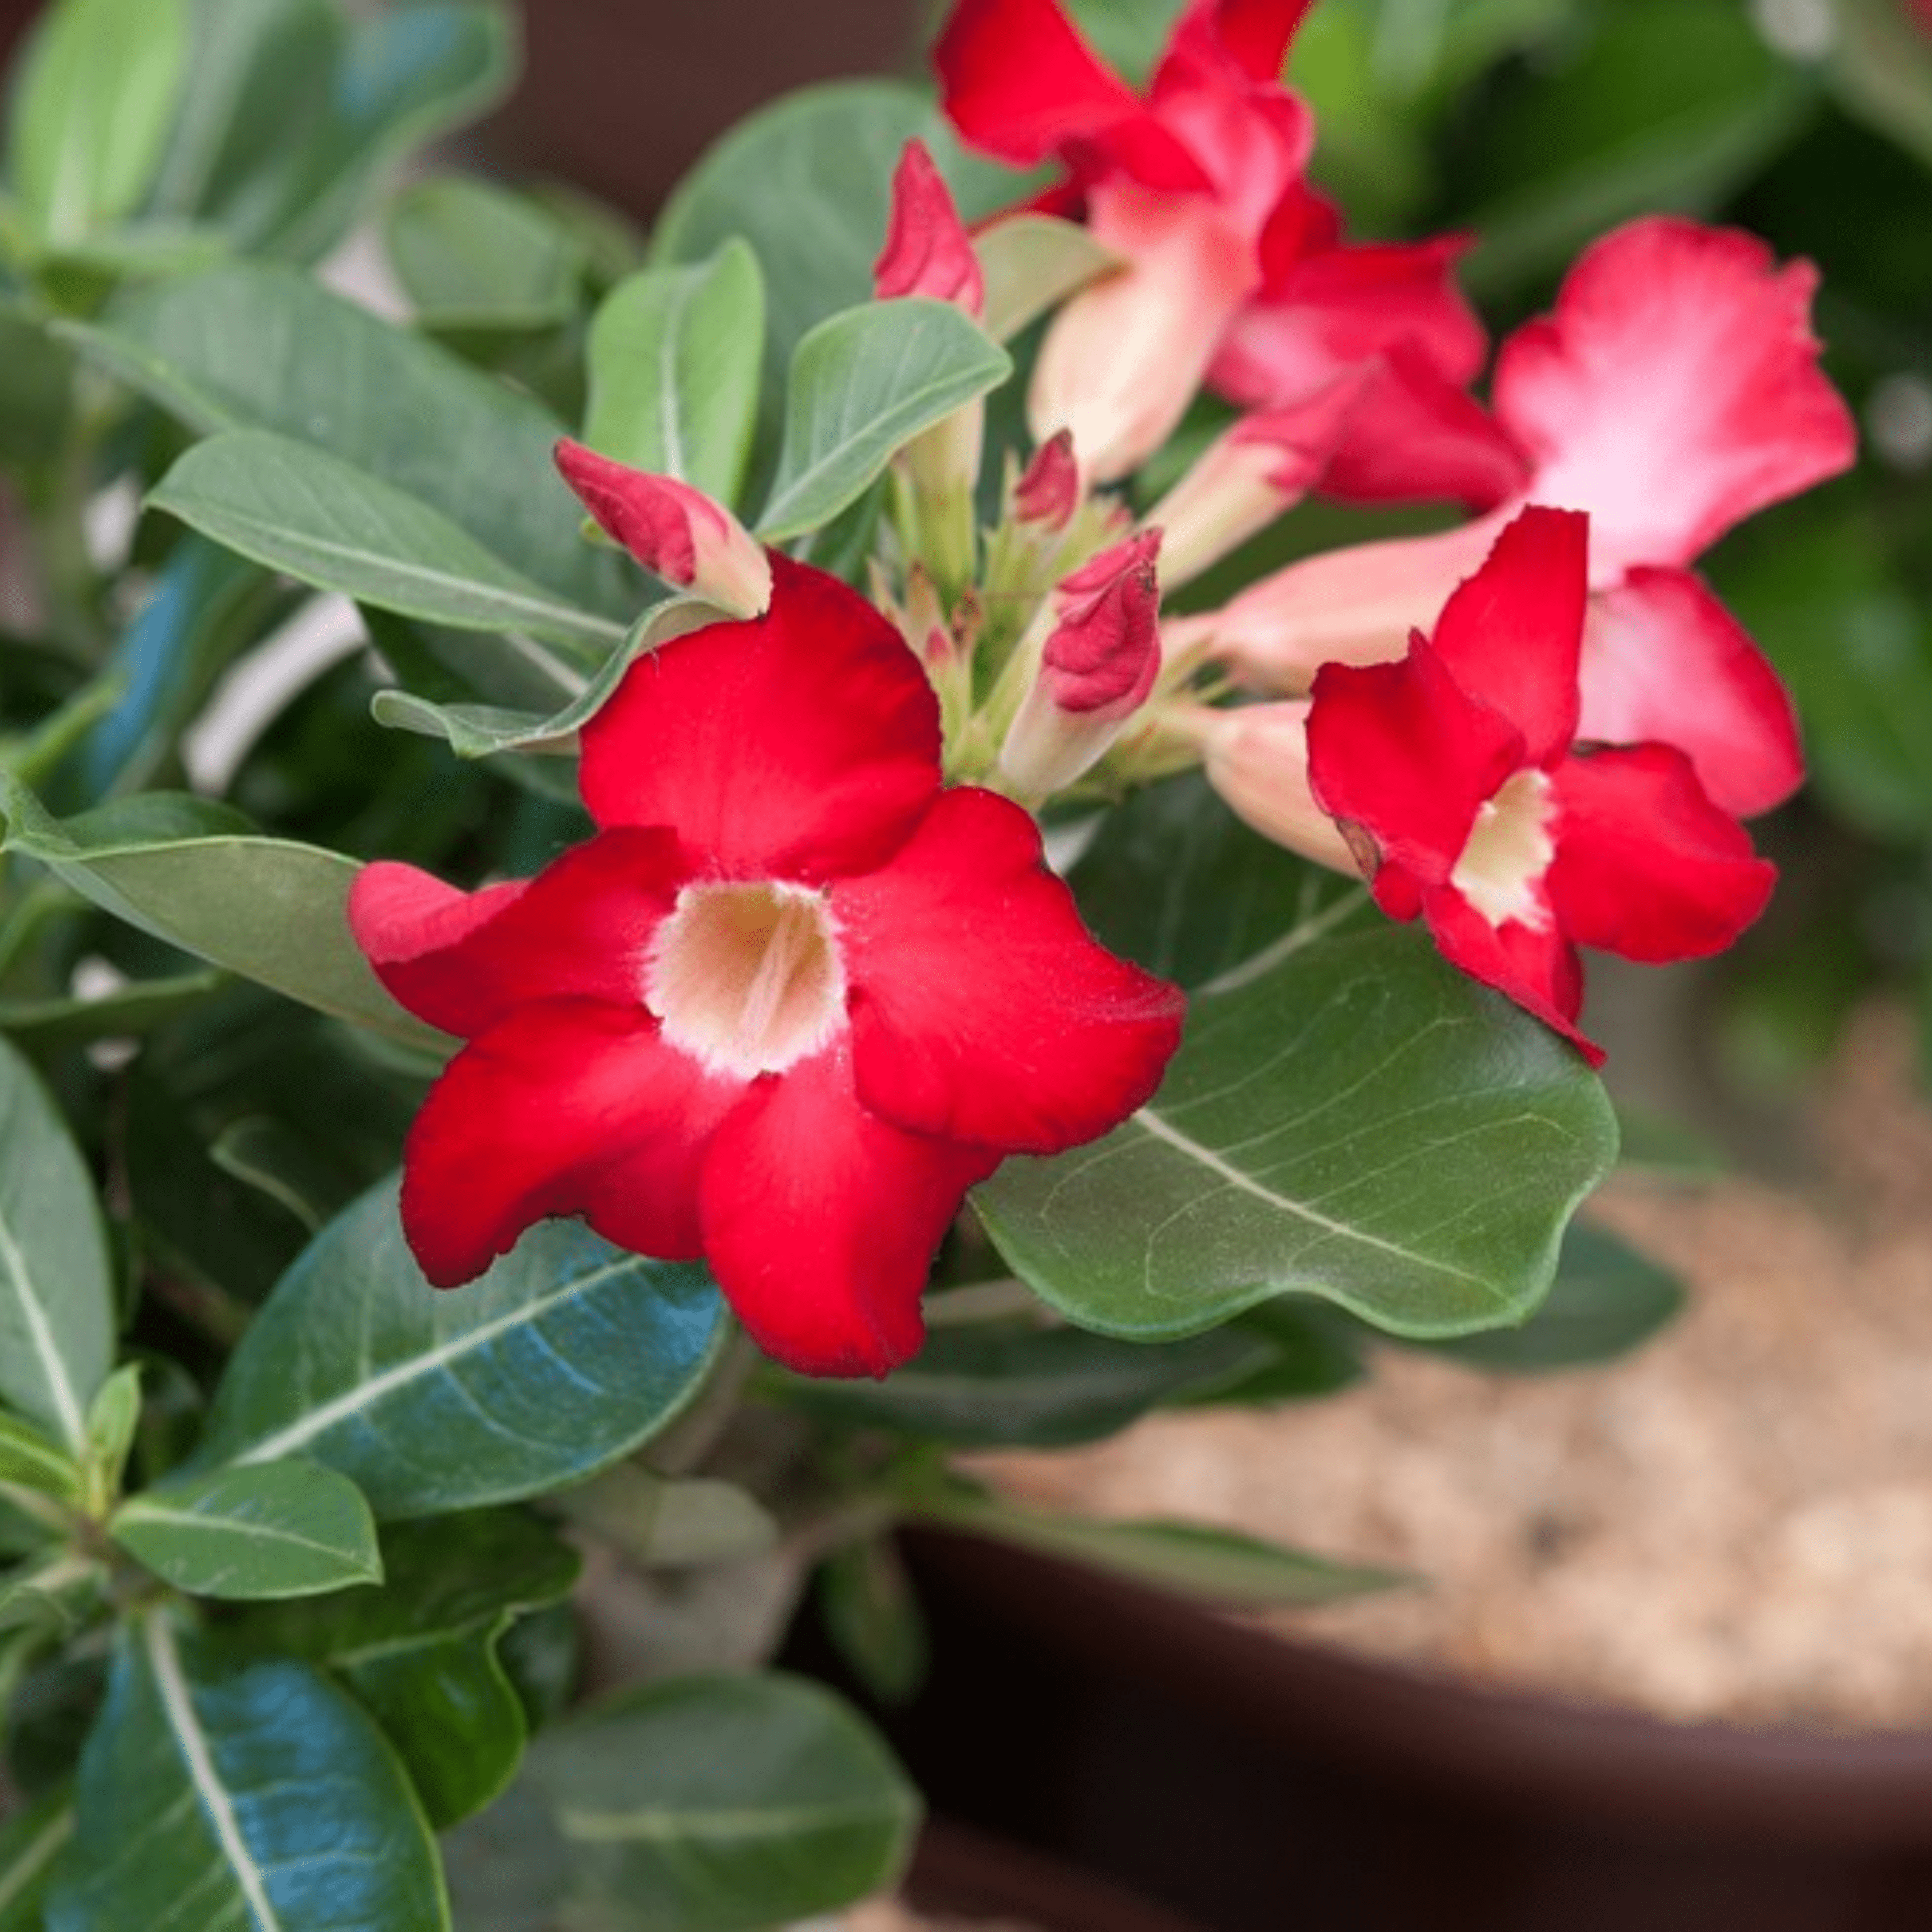 Desert Rose (Adenium obesum) Flowering Live Plant